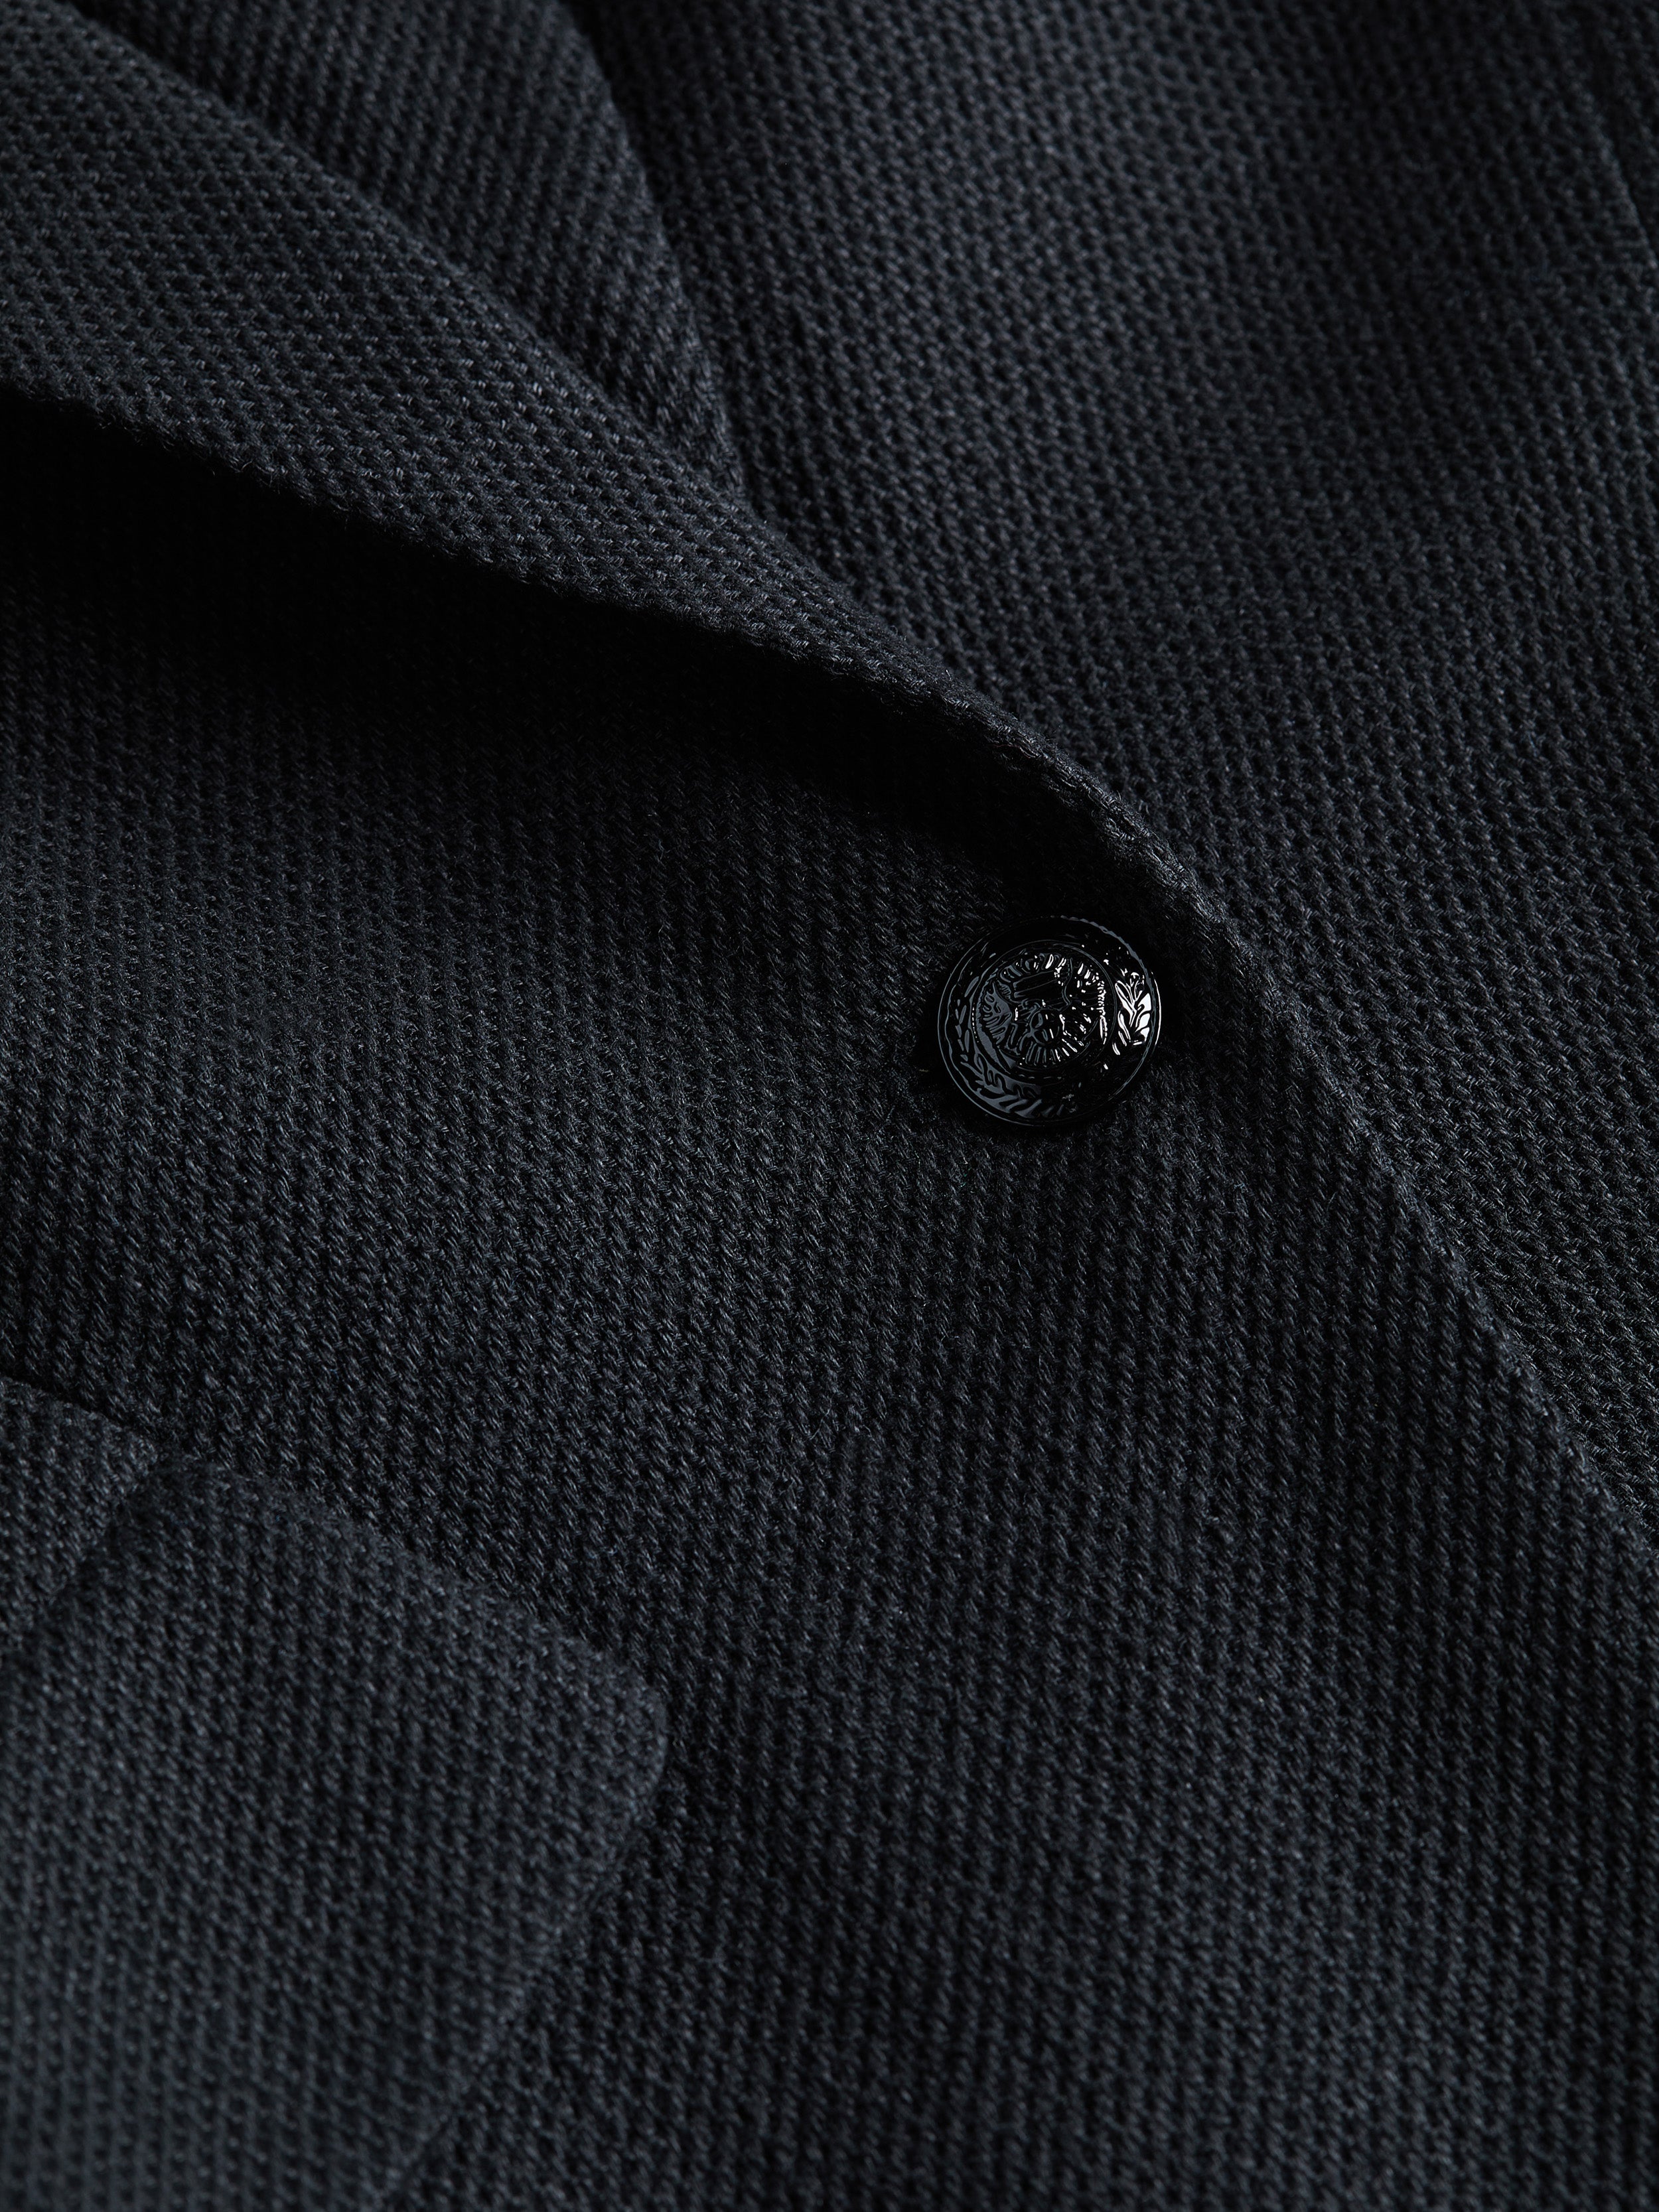 Shop L Agence Chamberlain Linen-blend Blazer In Black